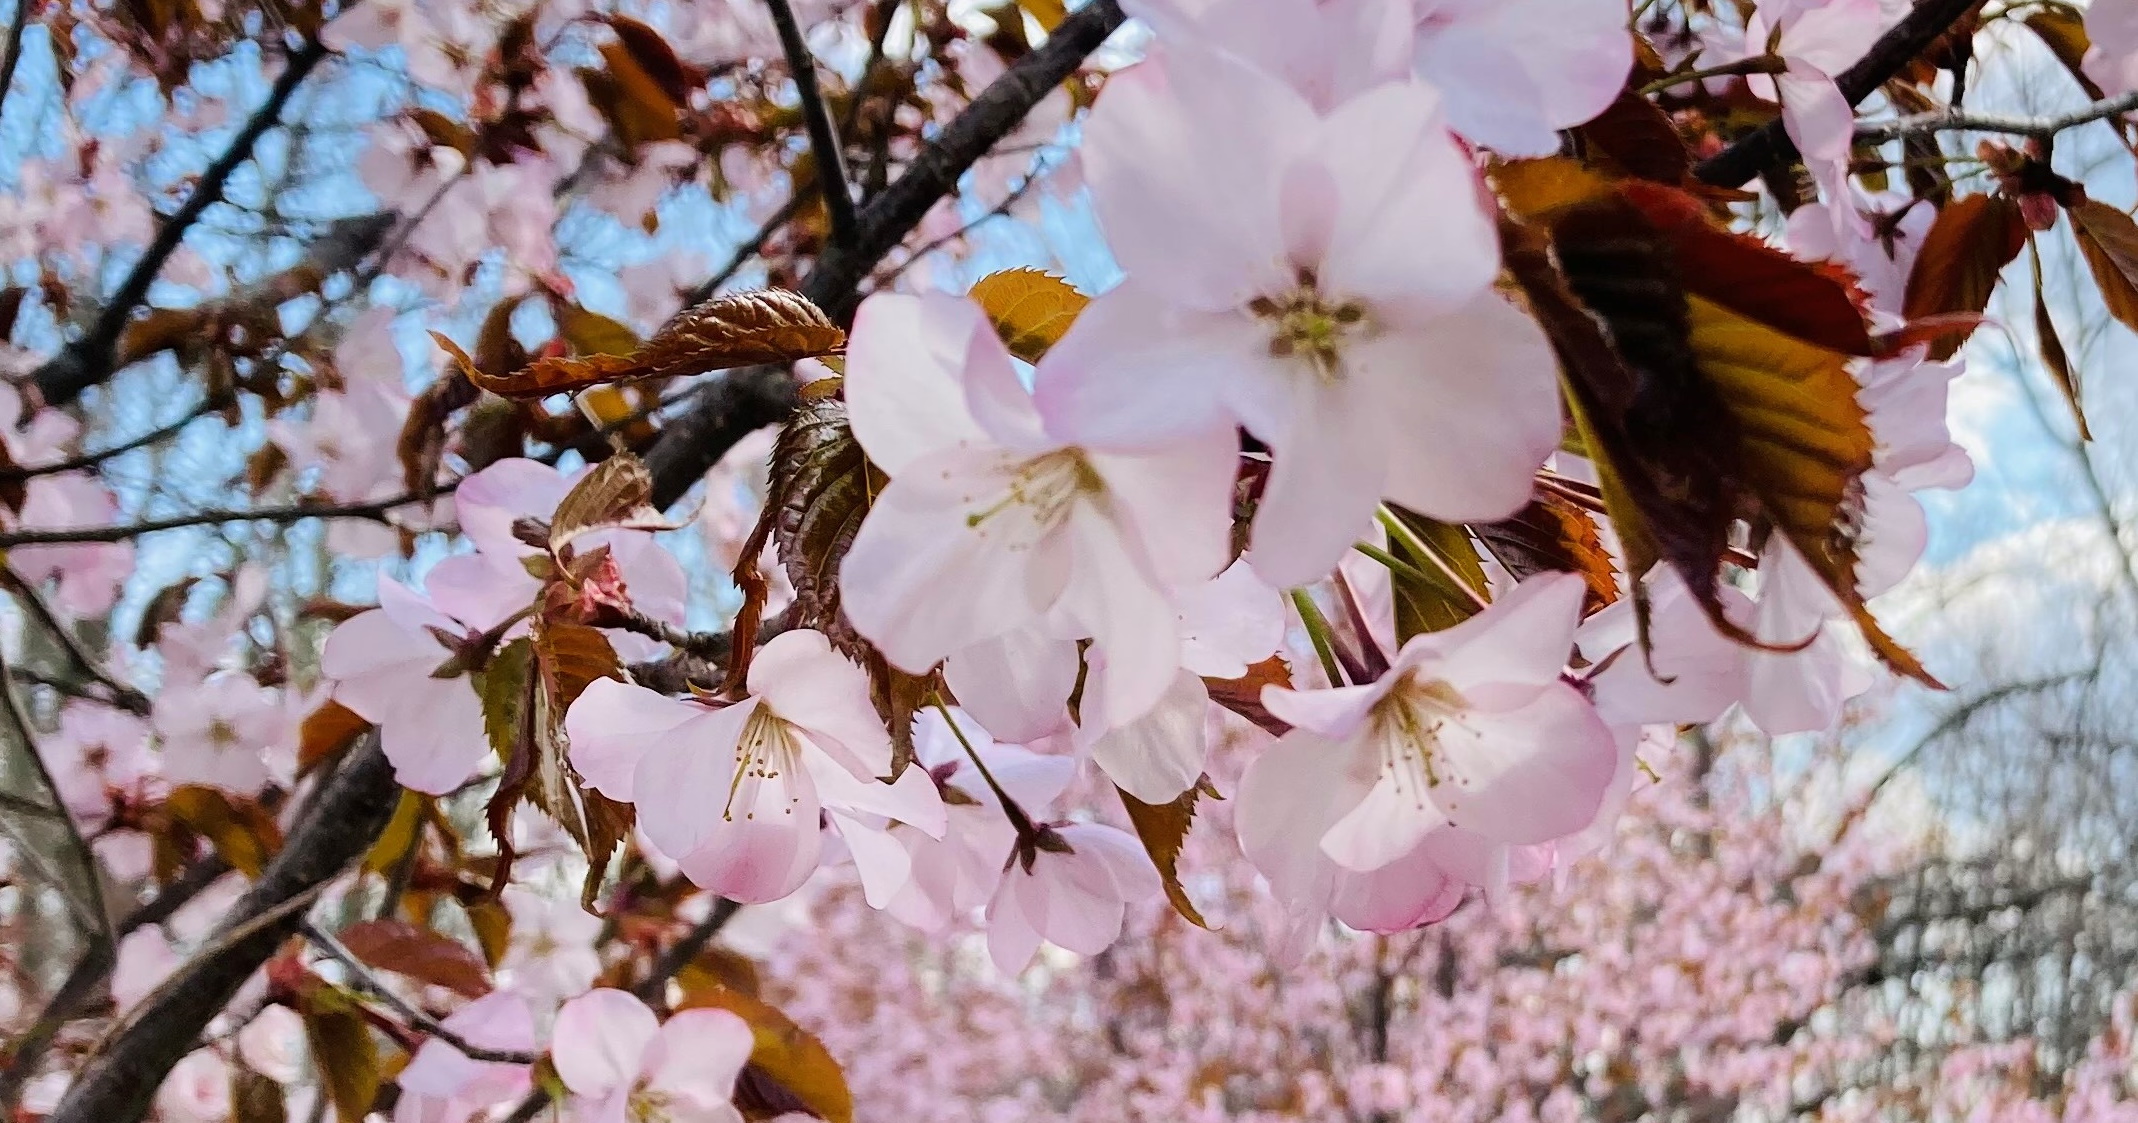 きたみらい地域の桜の名所「金刀比羅さくら公園」より春の風景をお届けします